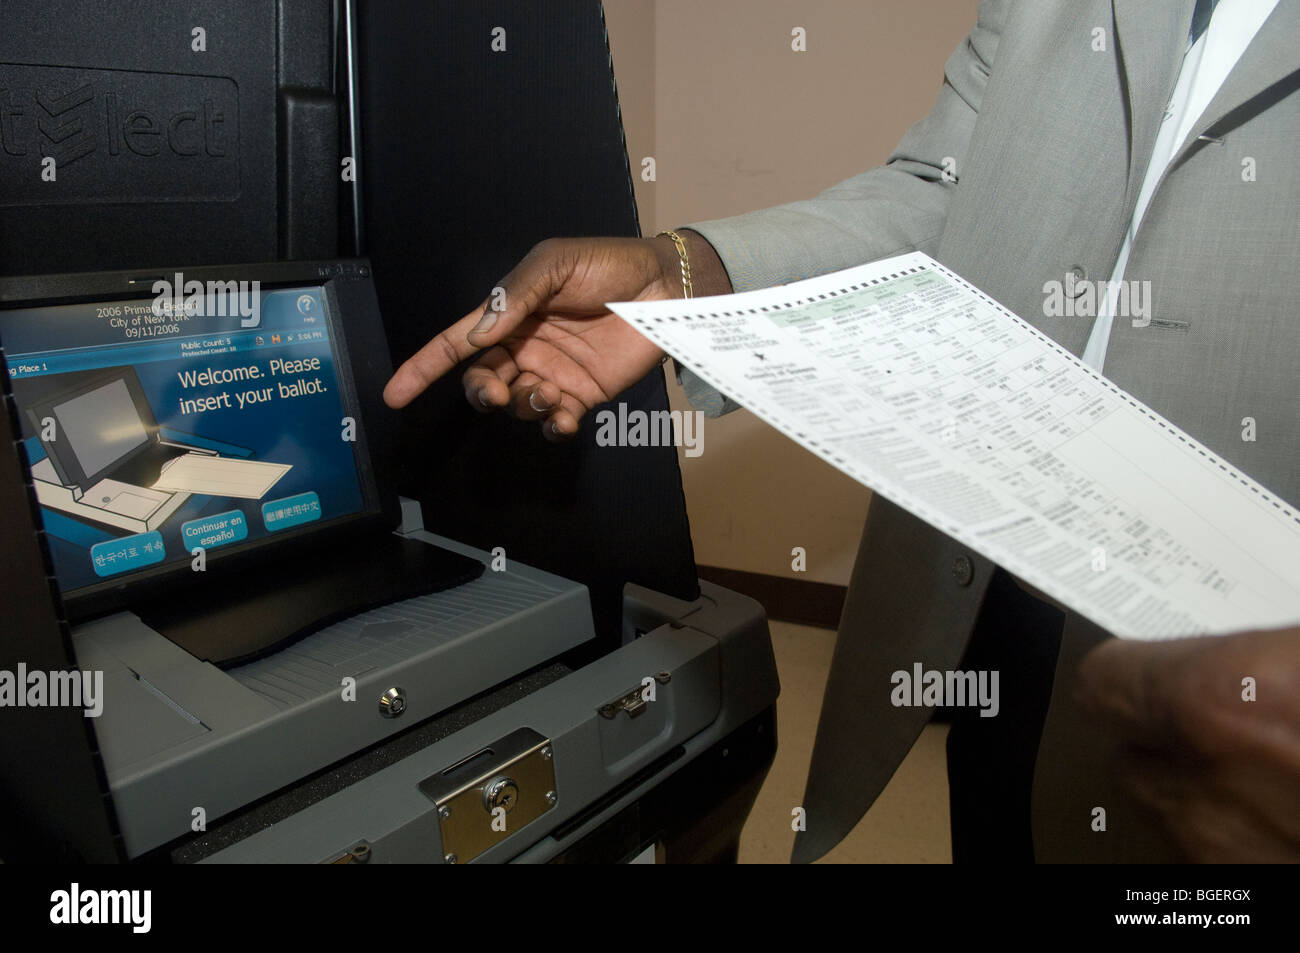 Des représentants de la société Dominion démontrer l'Imagecast Vote Tabulation cité, une machine de vote électronique Banque D'Images